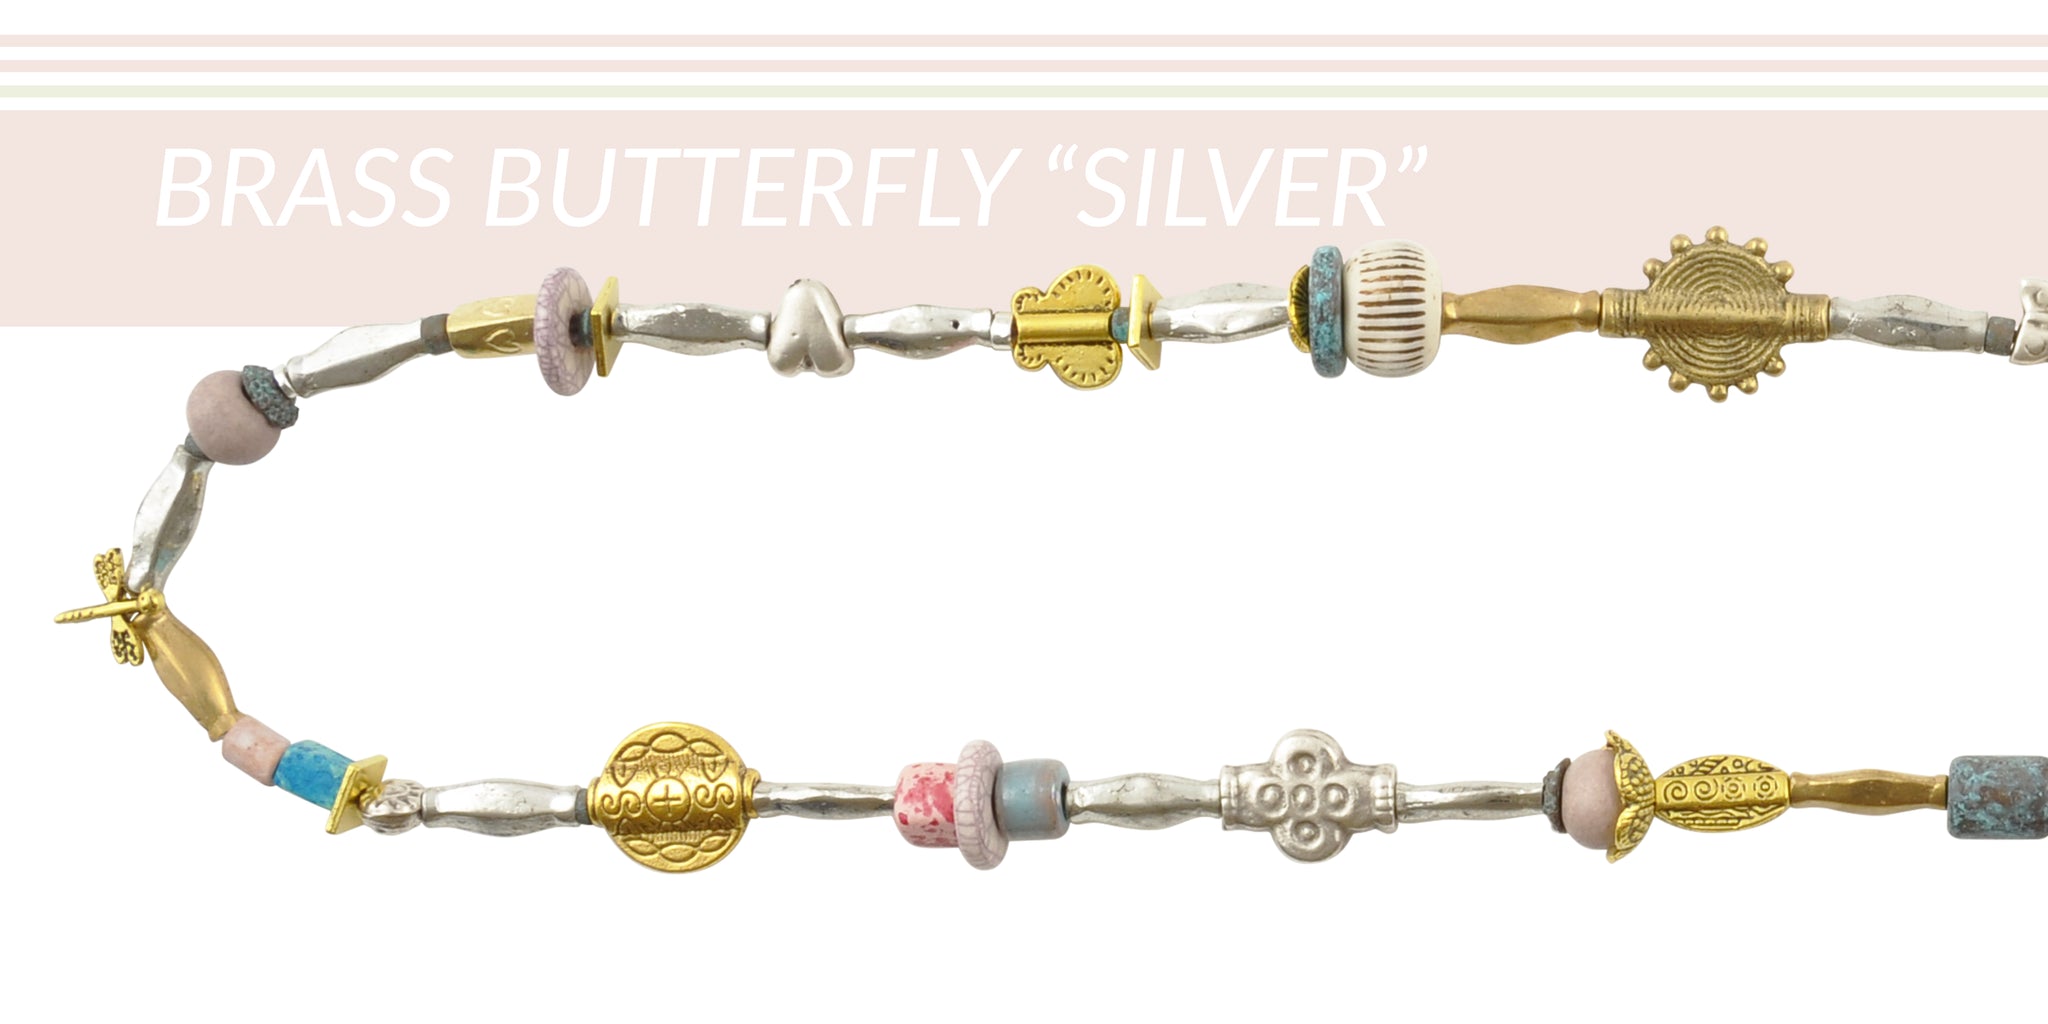 Brass Butterfly Silver Necklace Components batmanvstheuniverse